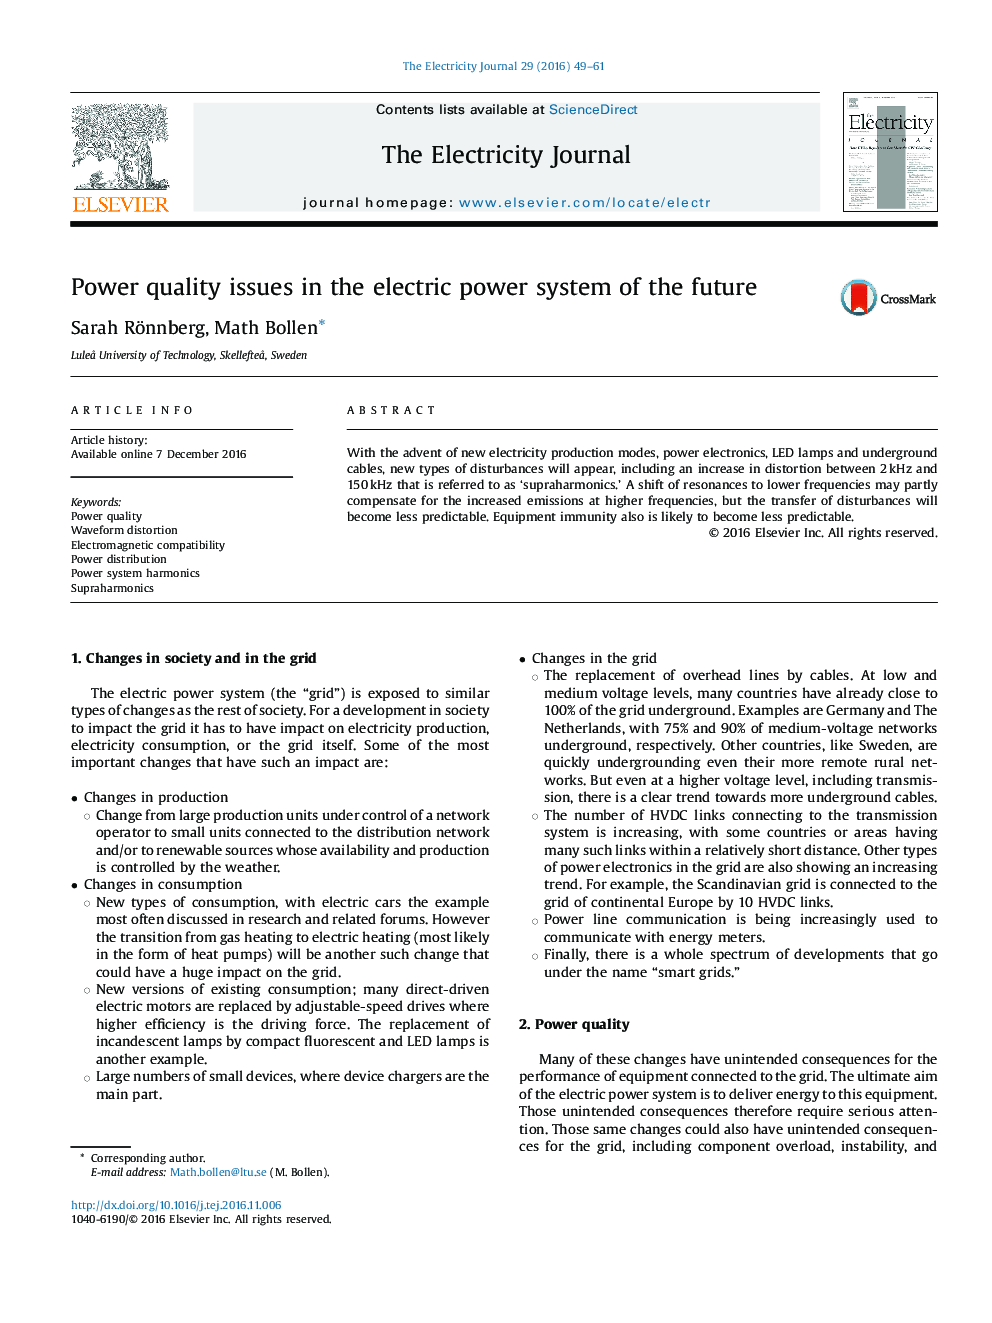 مسائل مربوط به کیفیت برق در سیستم برق آینده 